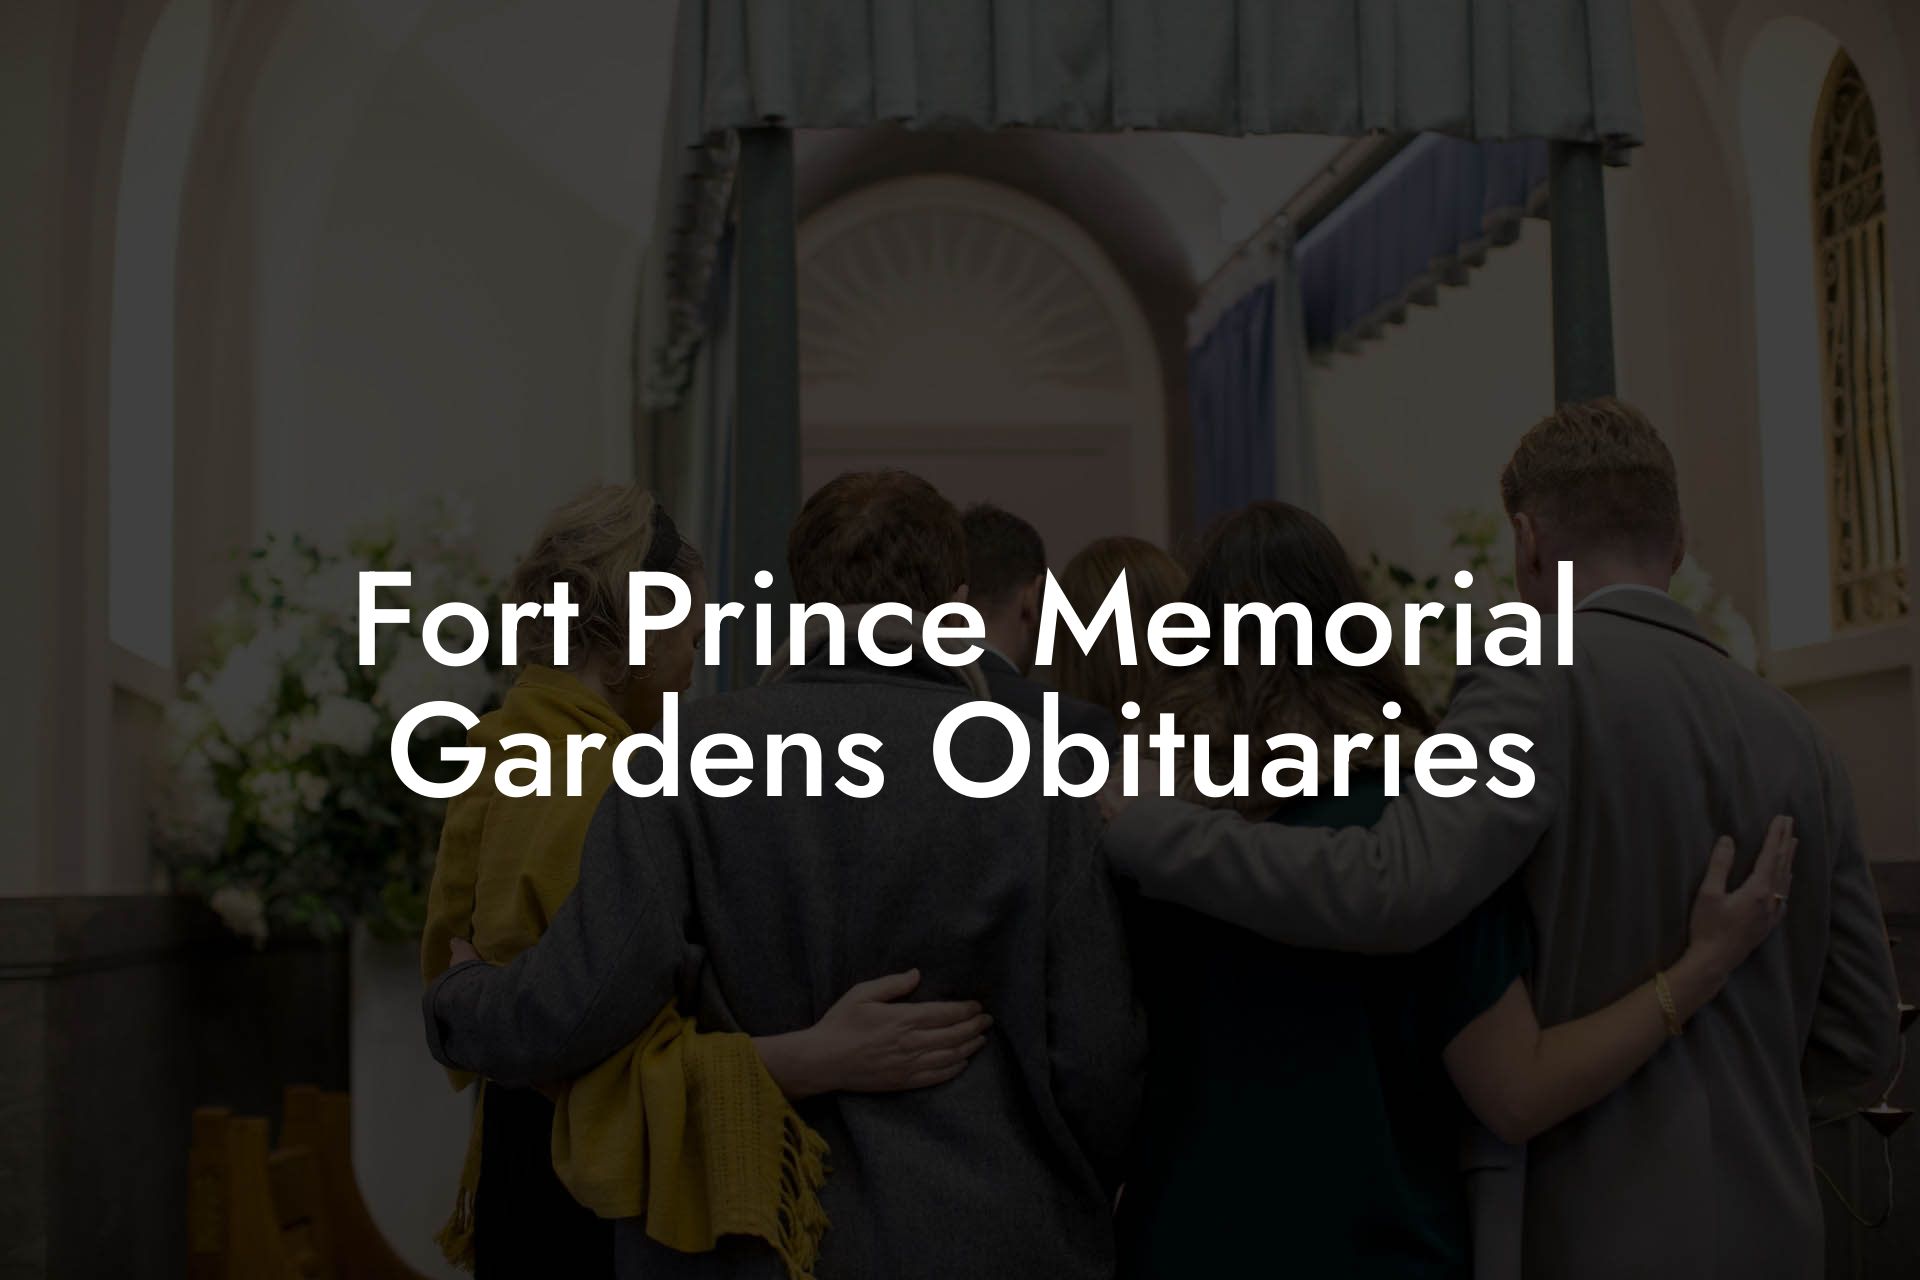 Fort Prince Memorial Gardens Obituaries